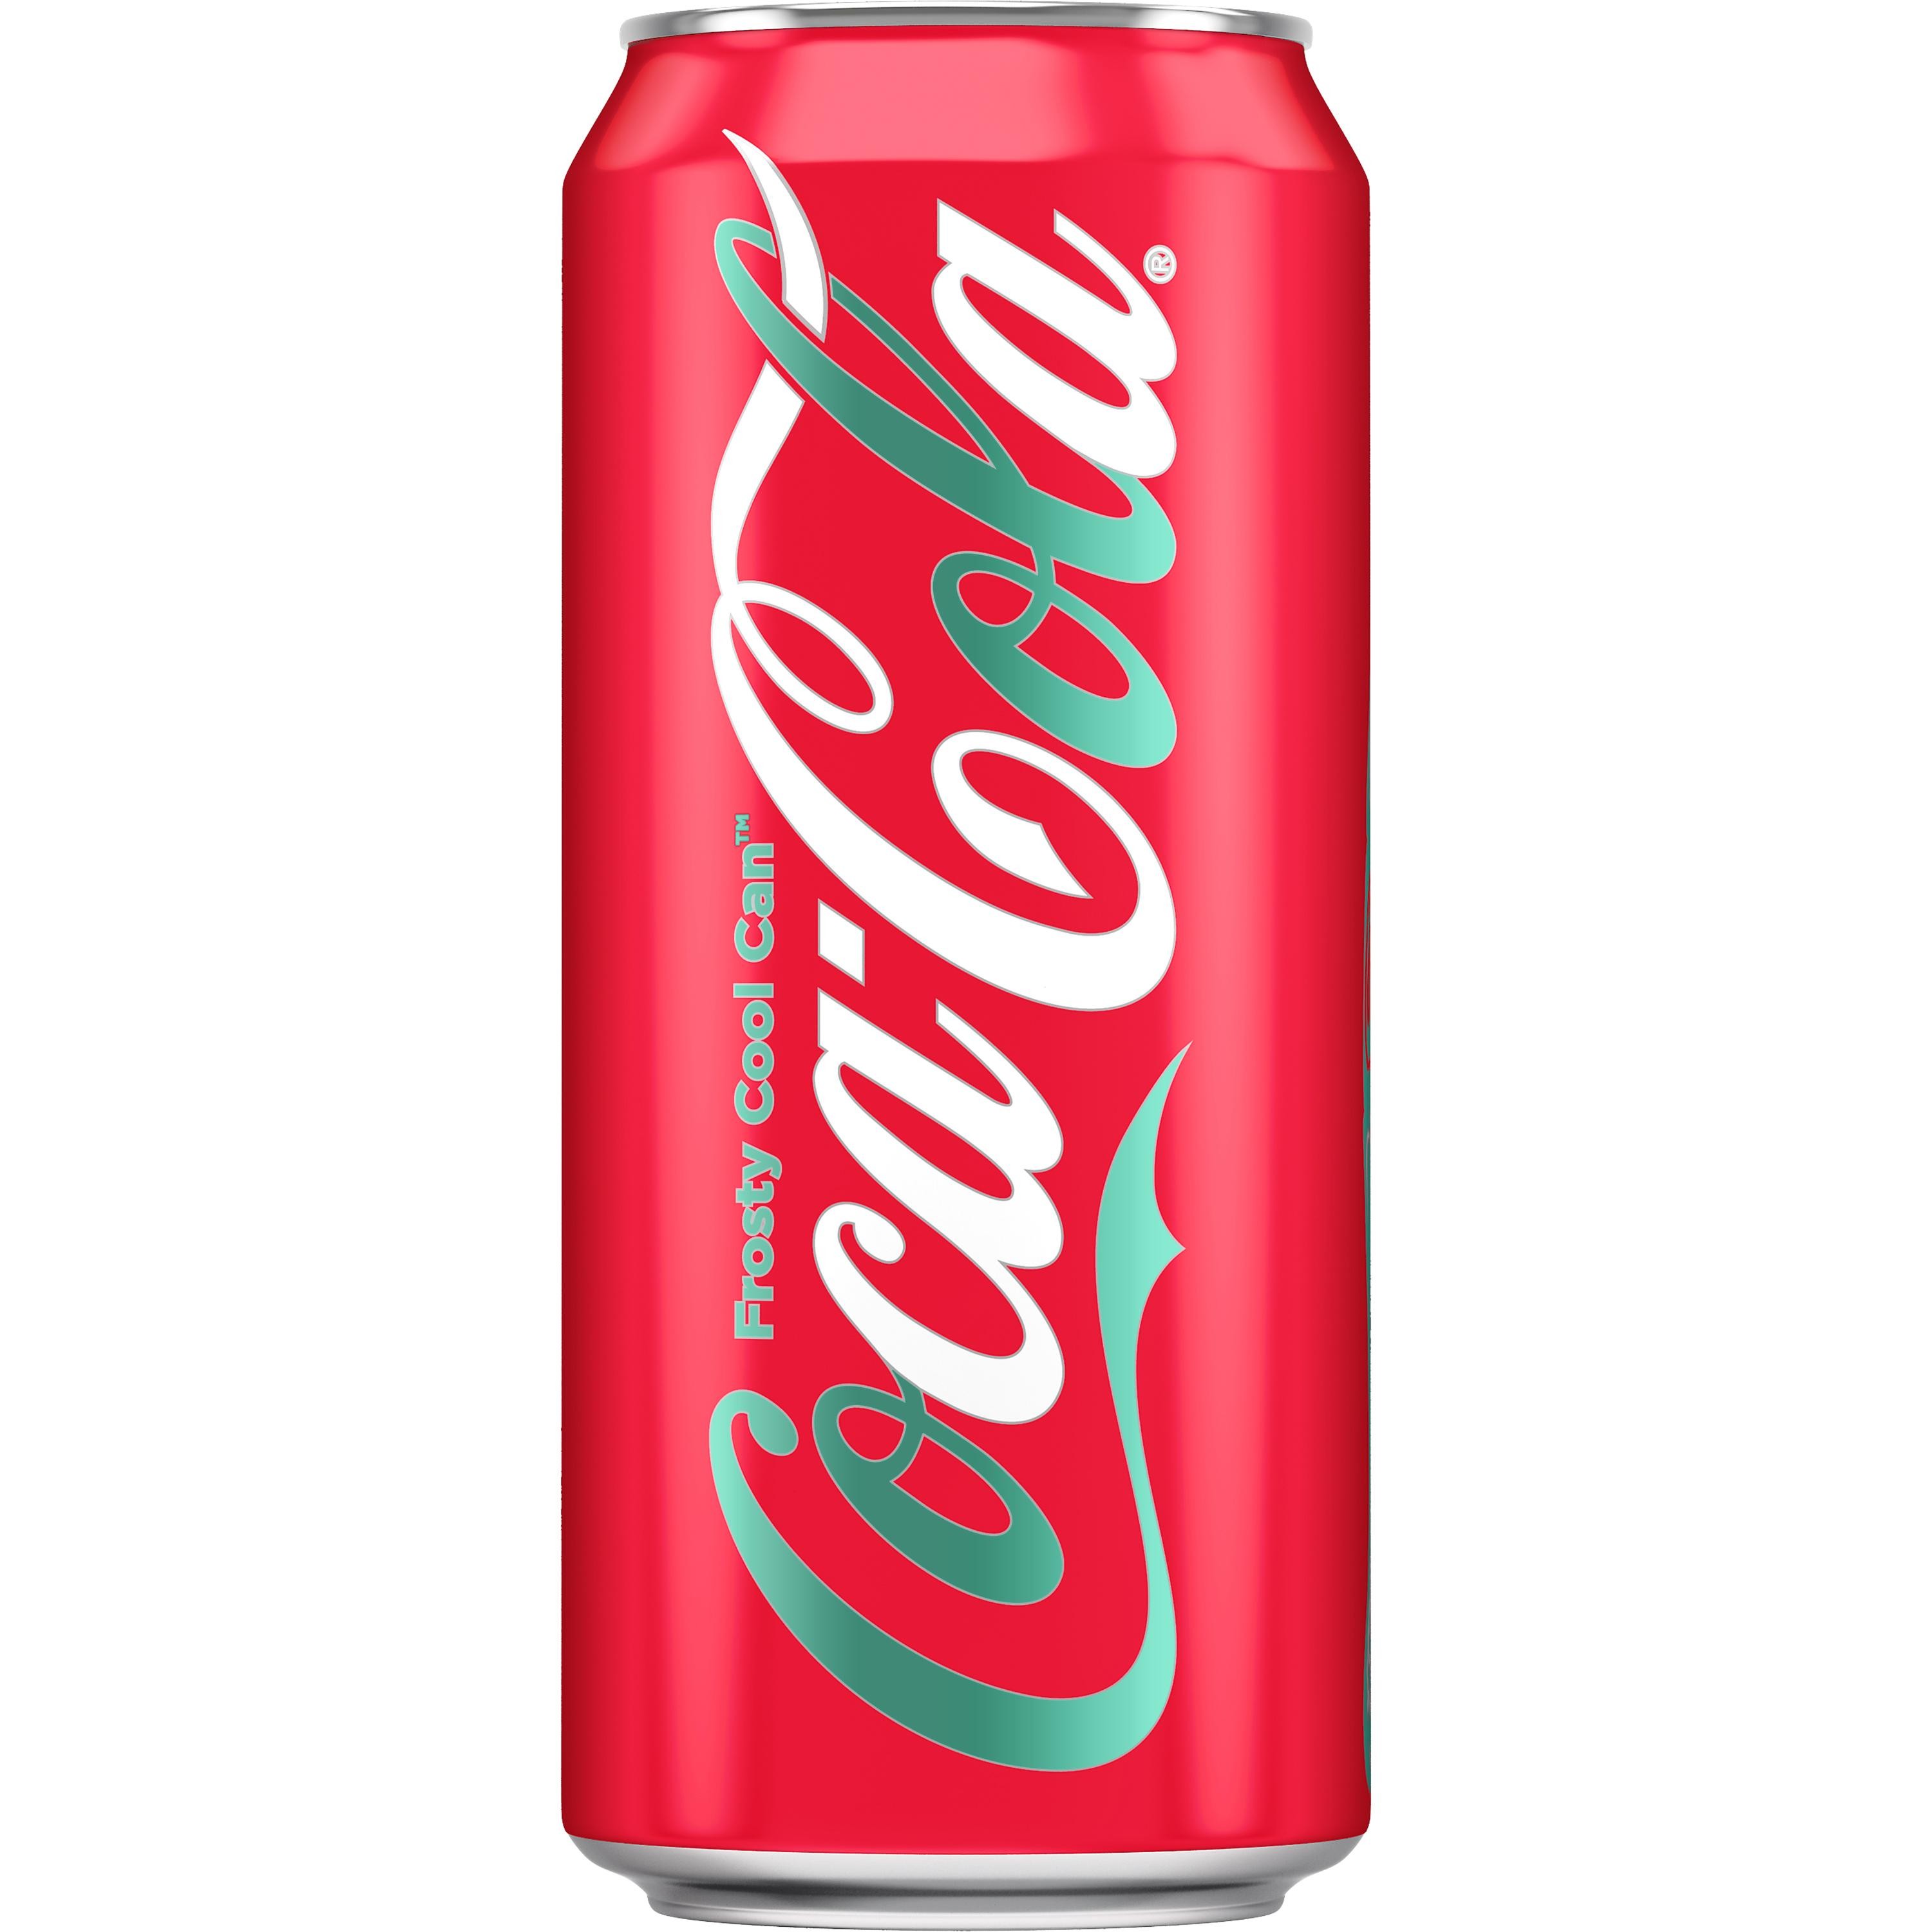 Coca-Cola Soda Soft Drink, 16 Oz